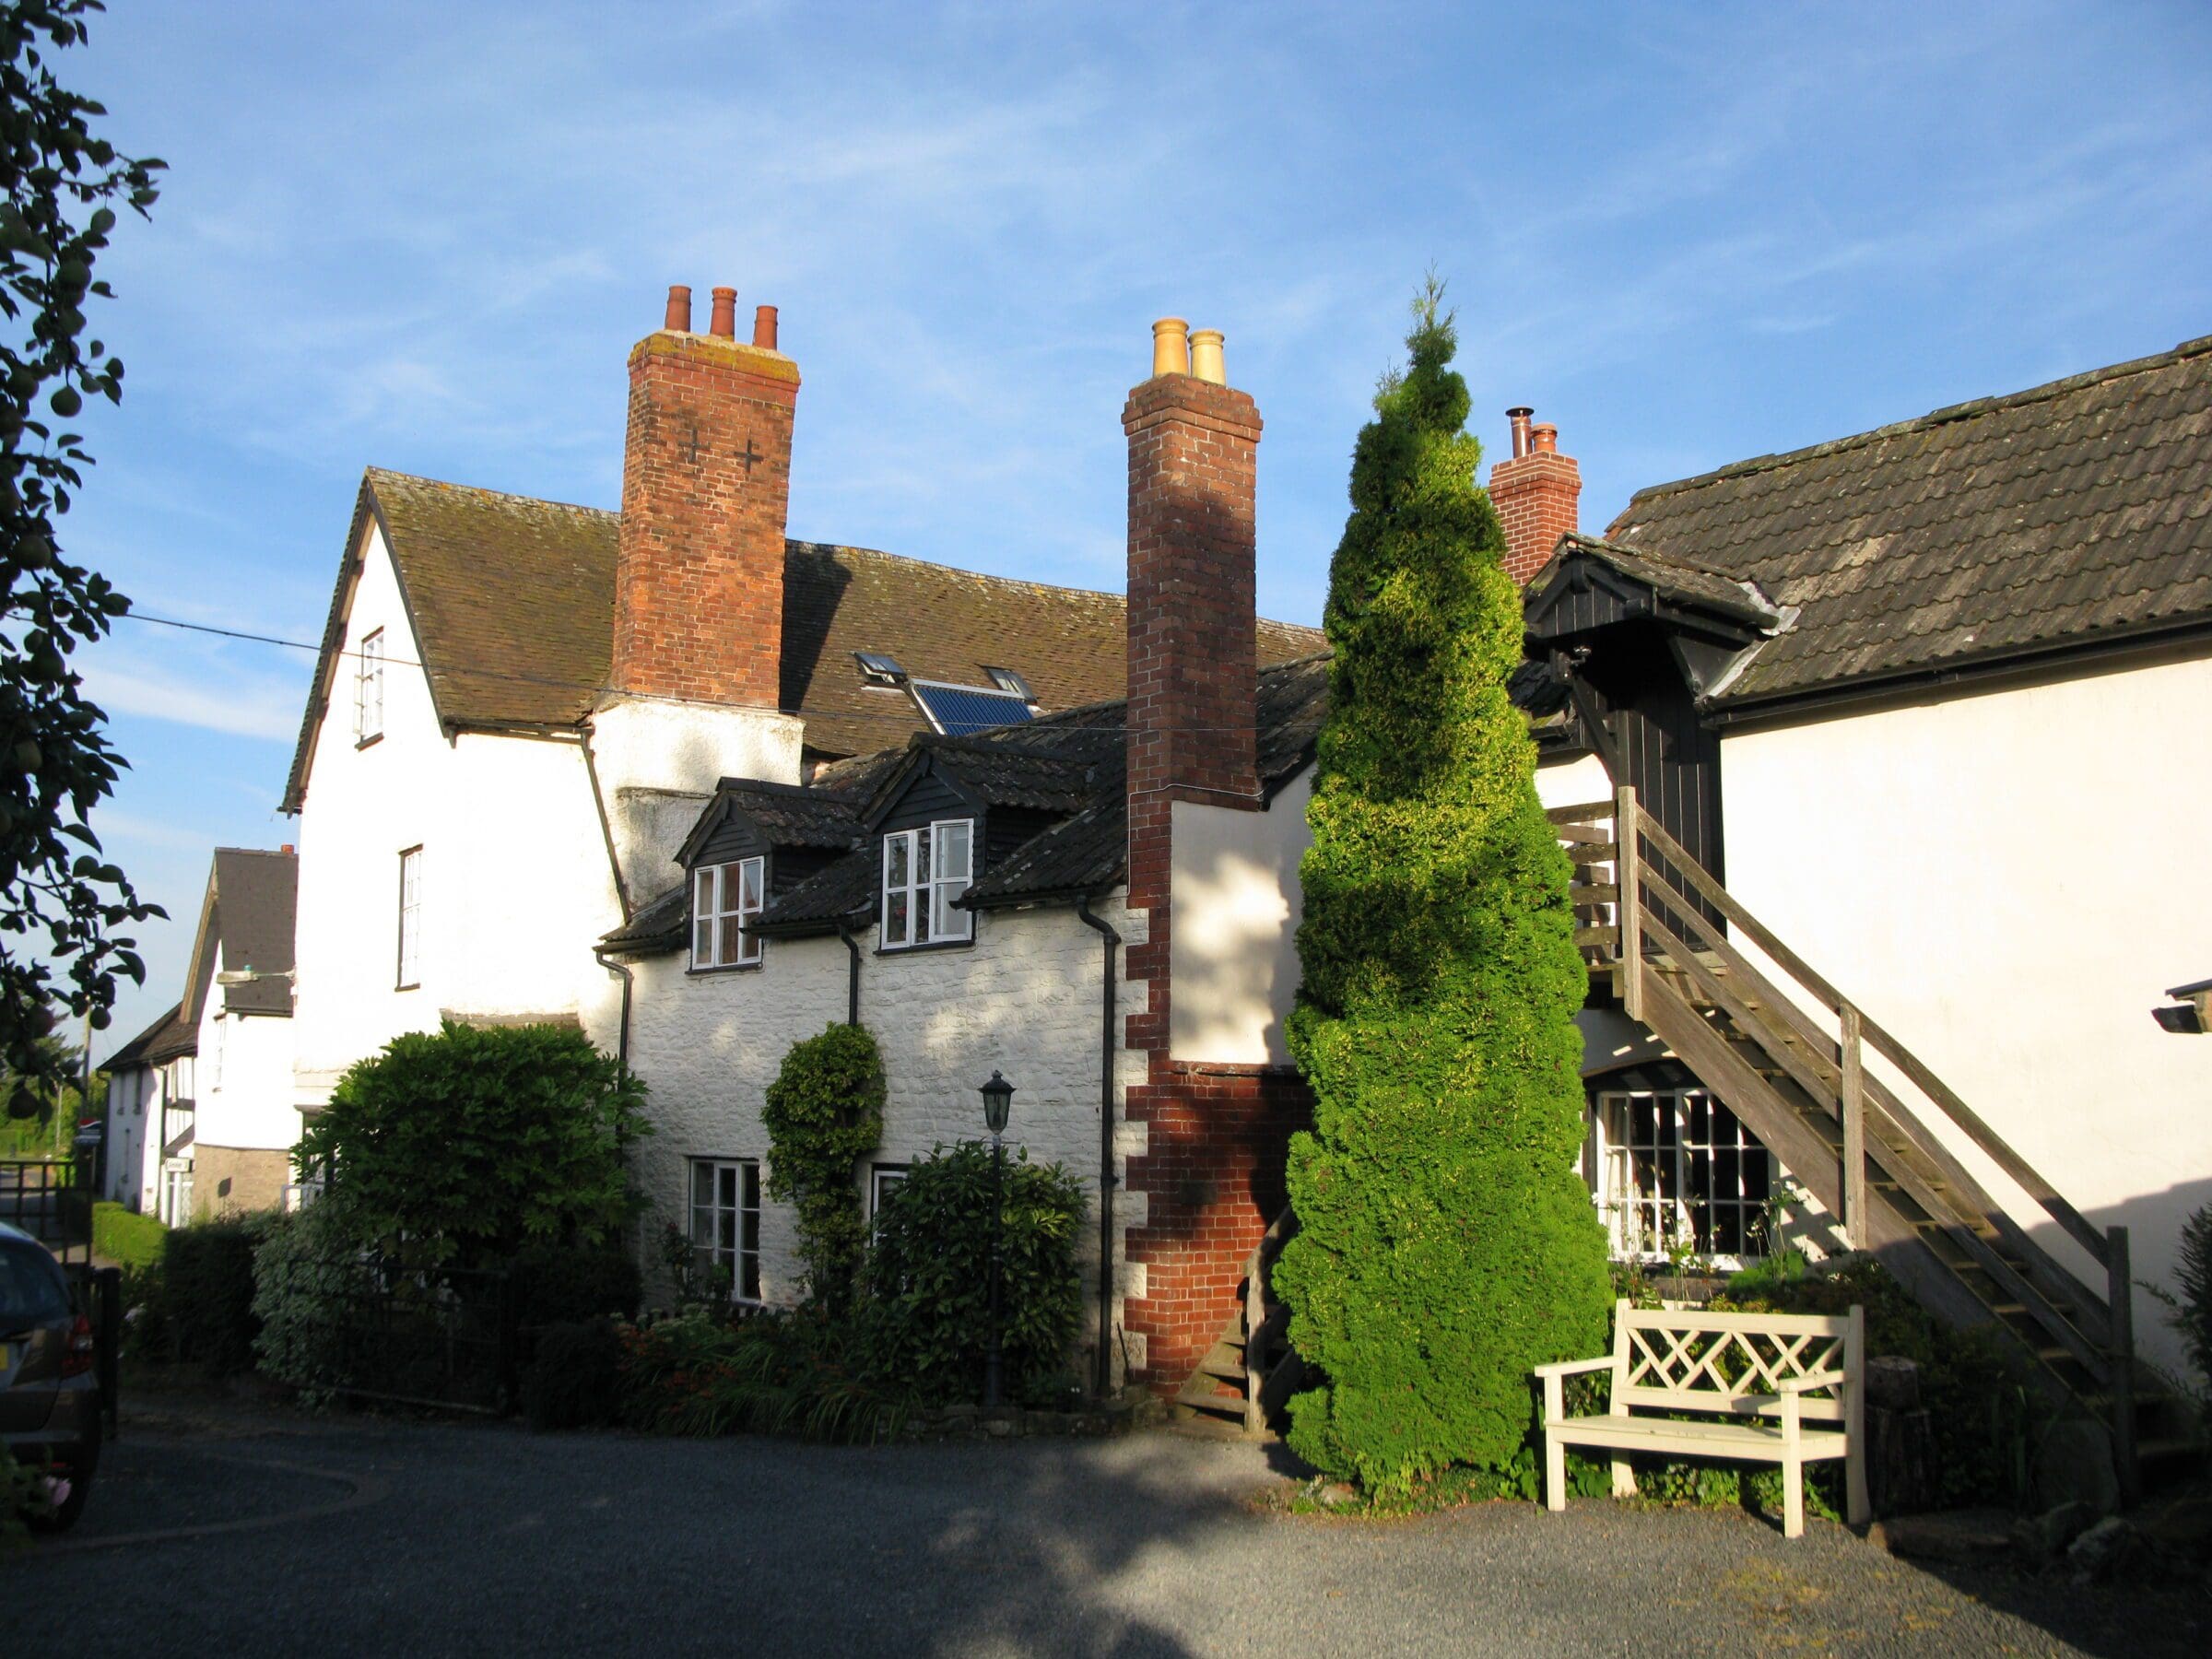 Arboyne House